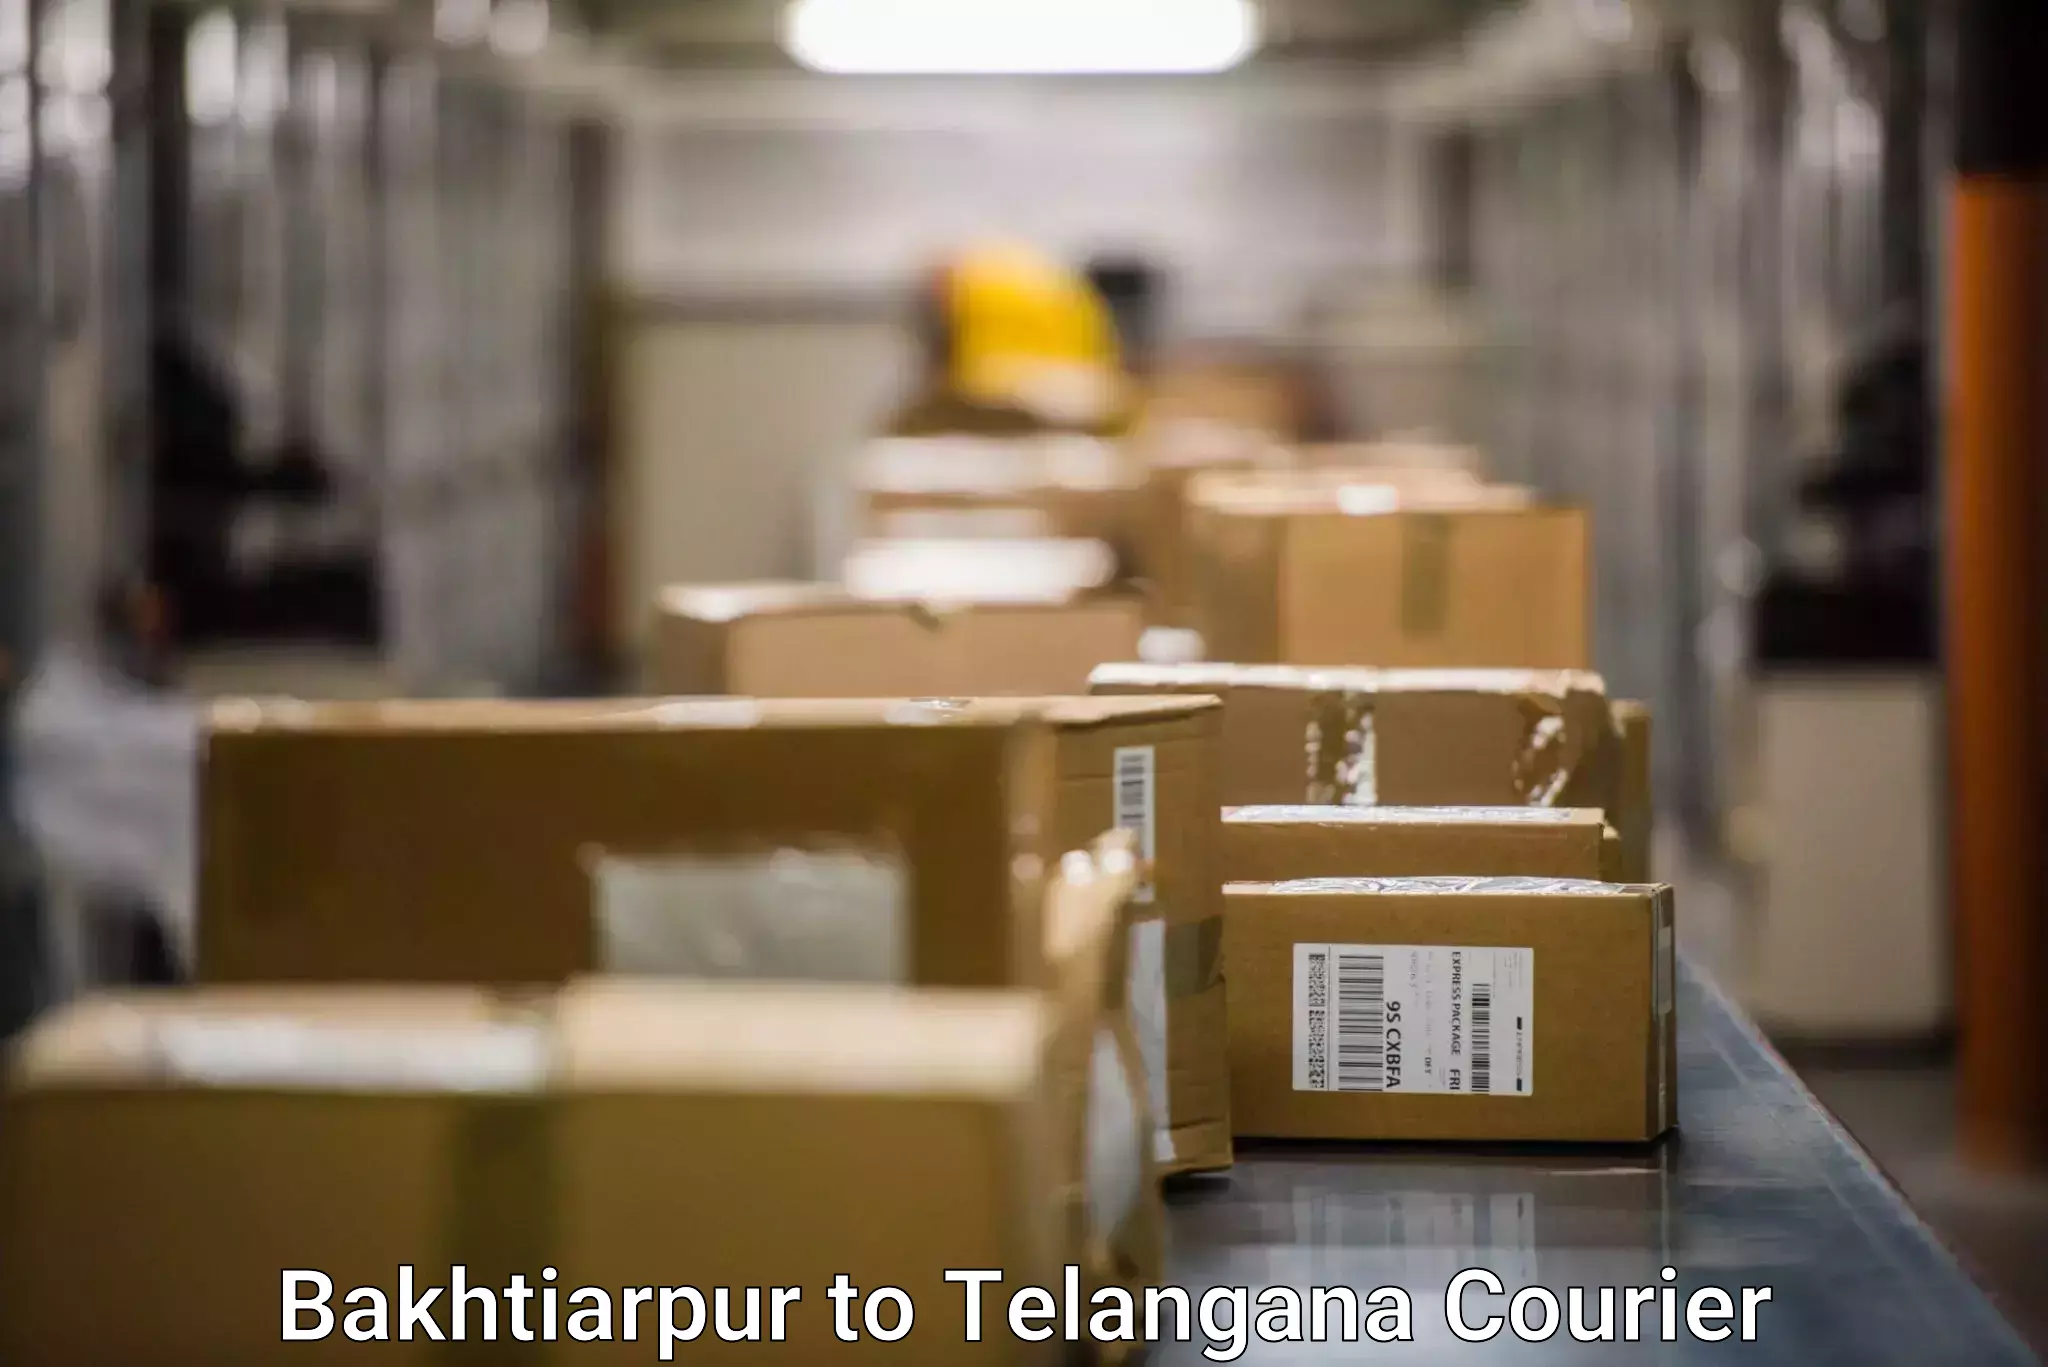 On-demand shipping options Bakhtiarpur to Kothagudem